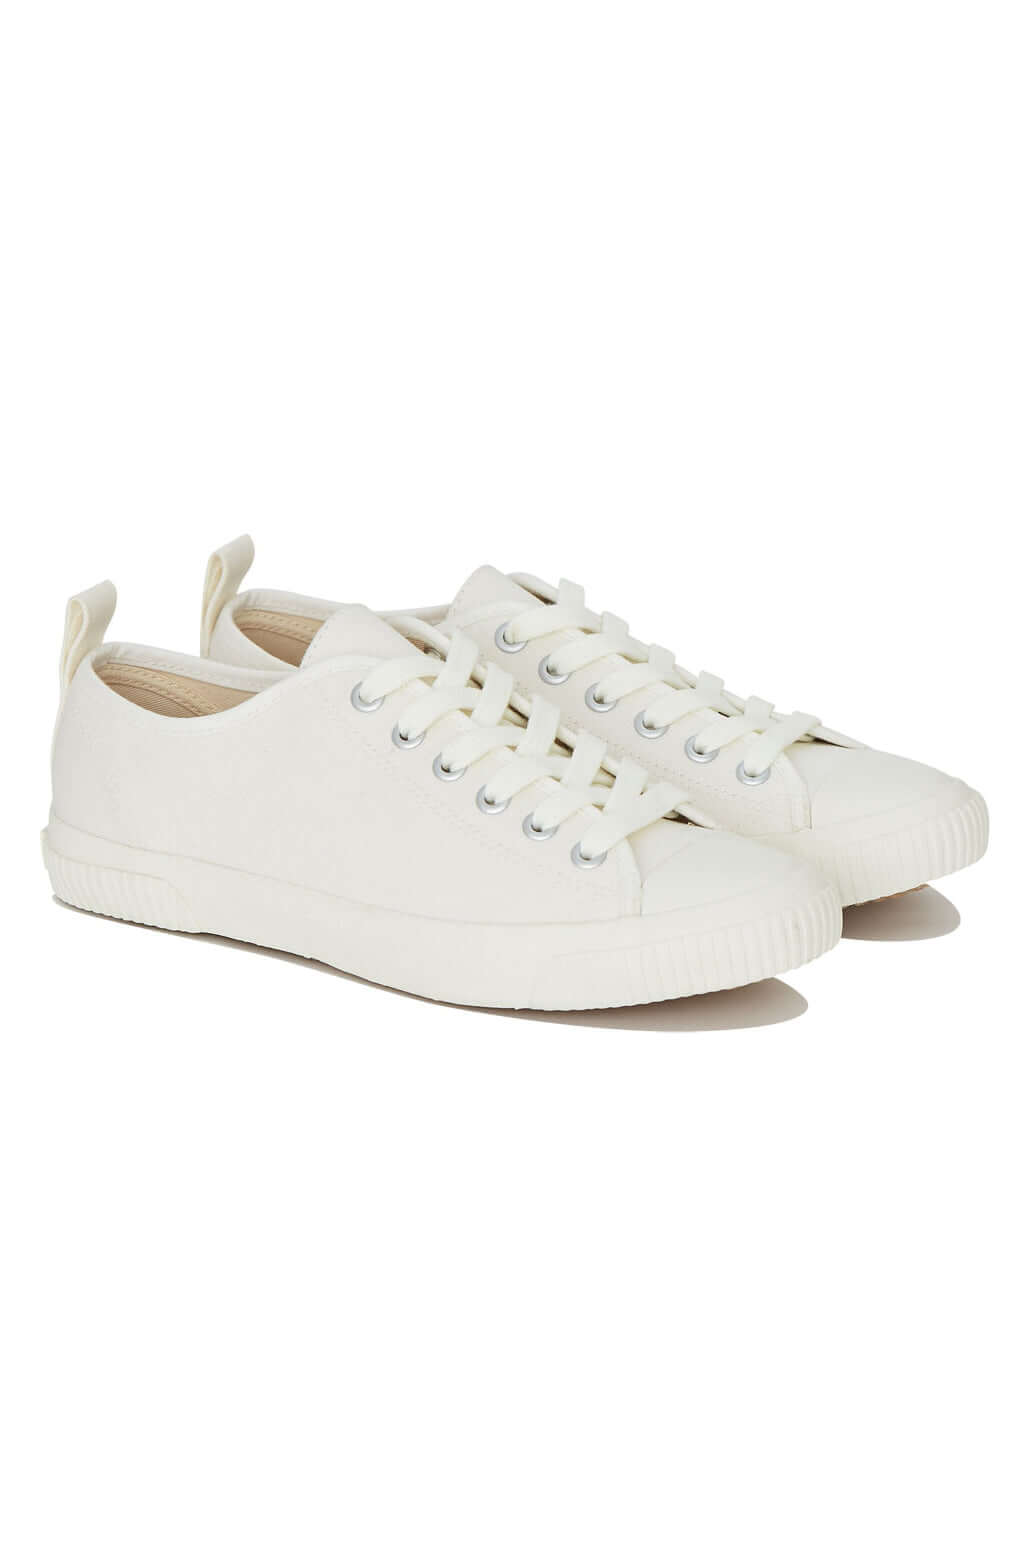 ECO SNEAKO - CLASSIC Womens Shoe White 2.0, EURO 37